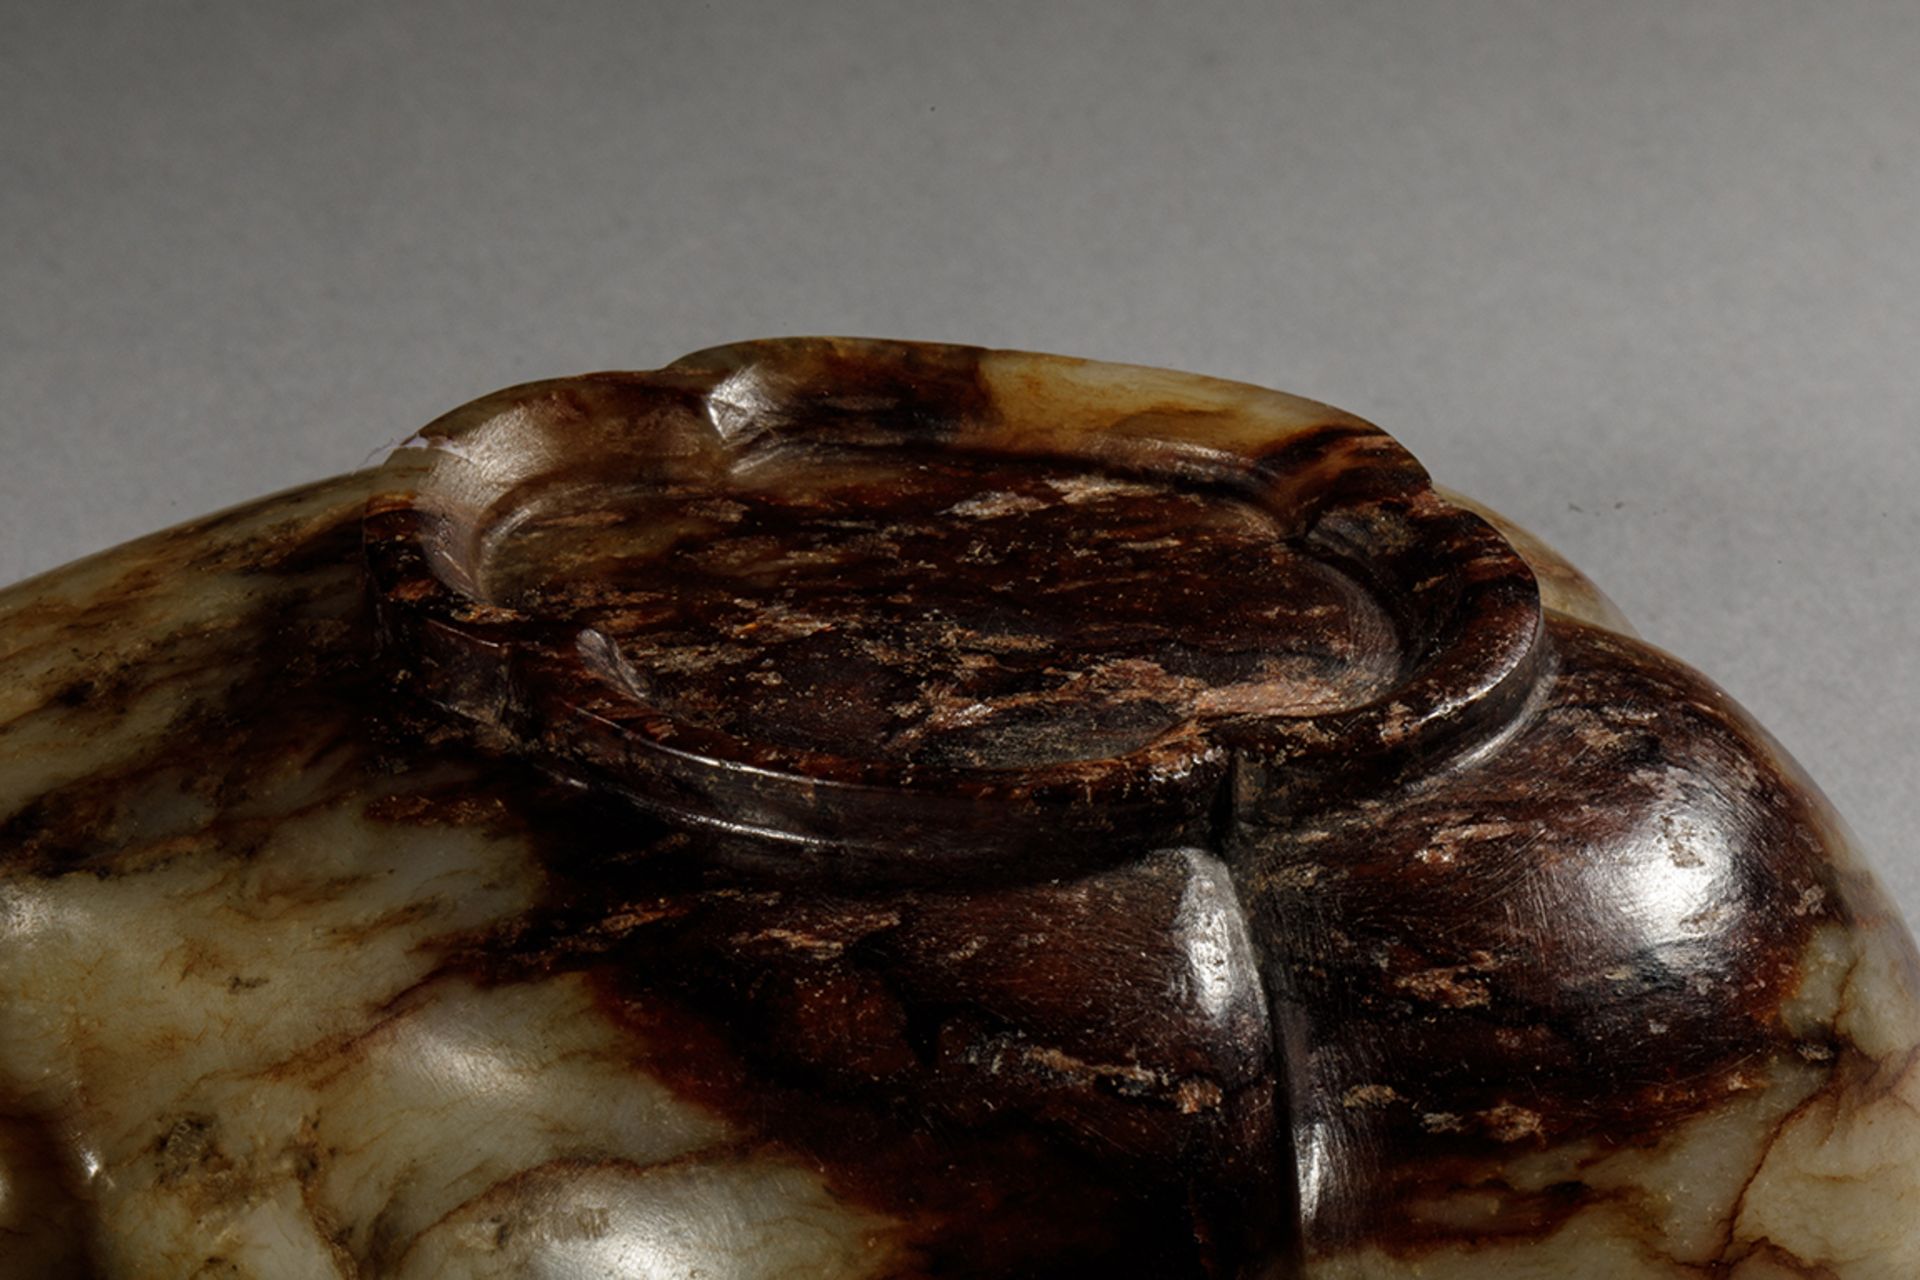 Coupe formant coquille trilobée à tenon spirale sur base en couronne, en Jade miel et ocre brun - Bild 4 aus 4